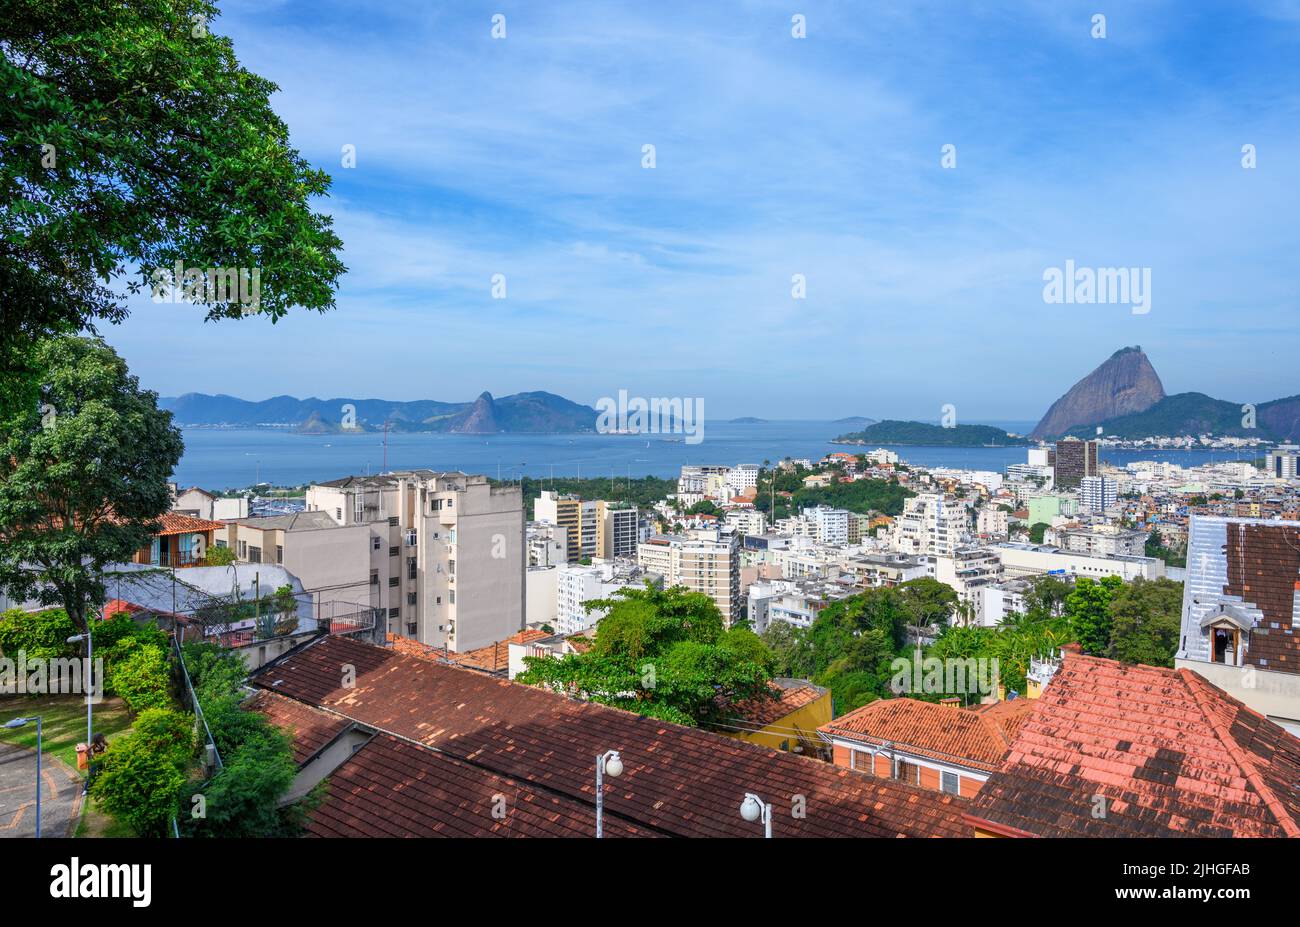 View over the city looking towards Sugarloaf Mountain, Parque das Ruínas, Santa Teresa, Rio de Janeiro, Brazil Stock Photo